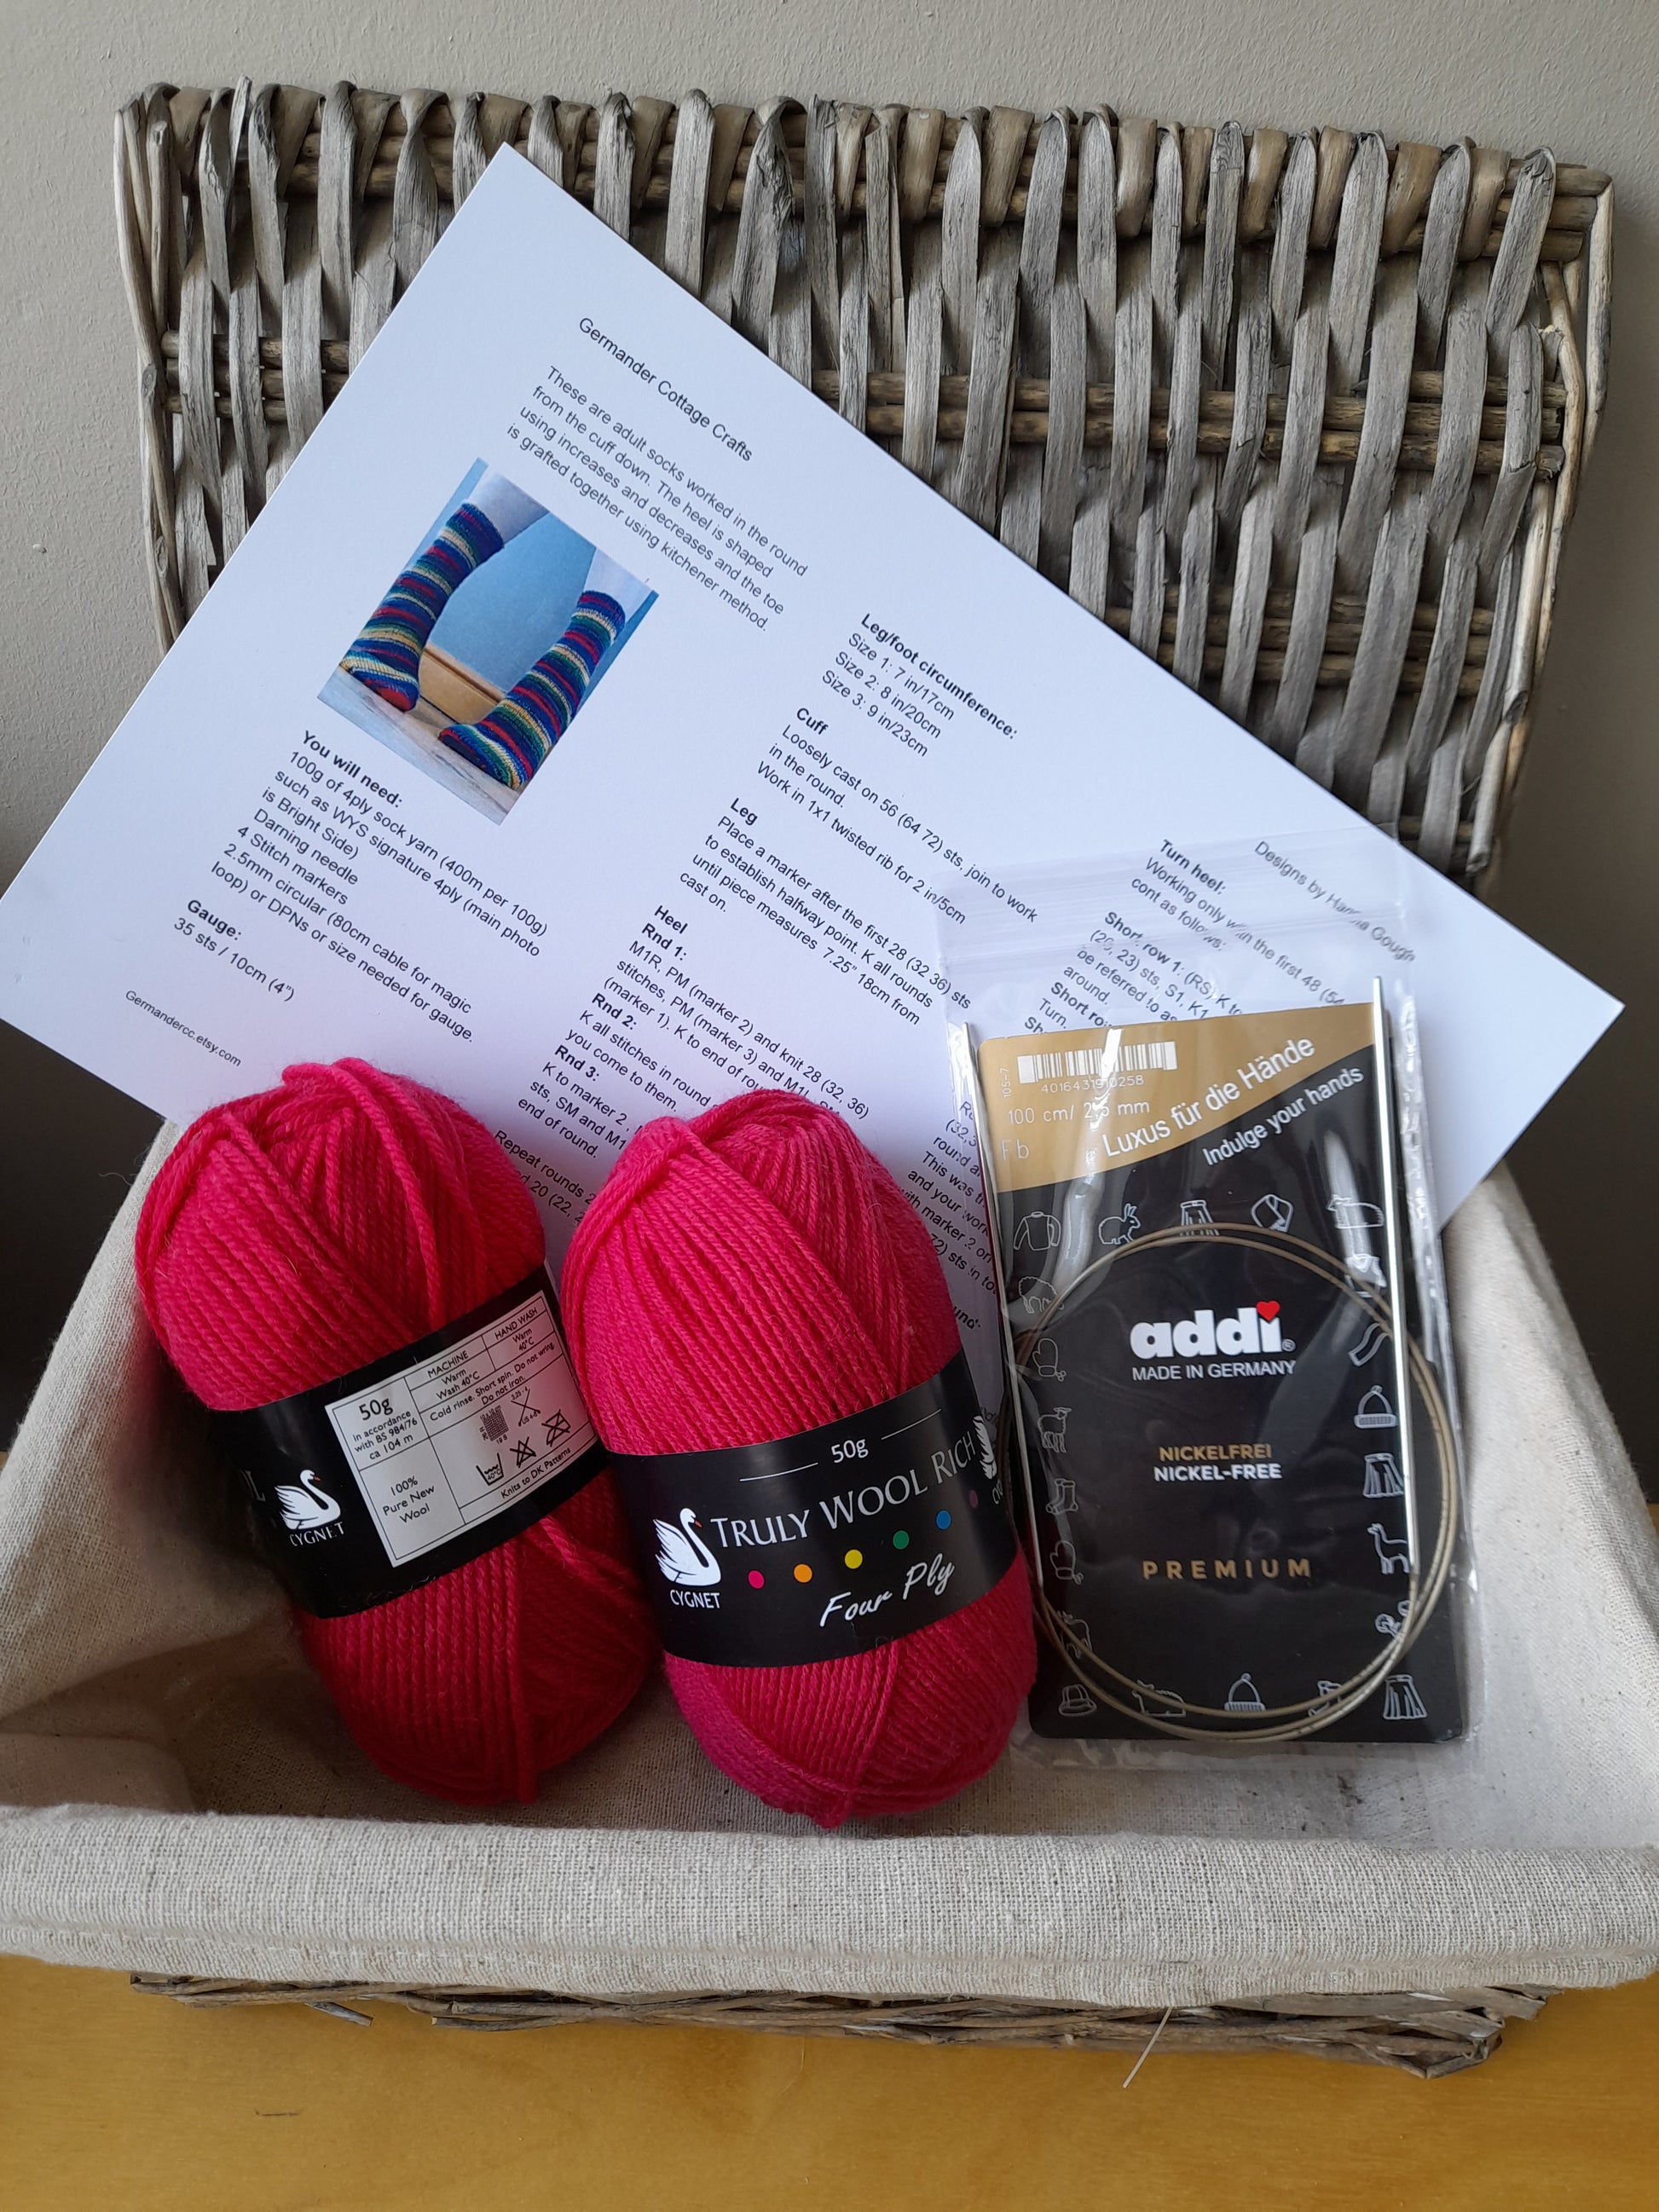 Beginner sock knitting kit 